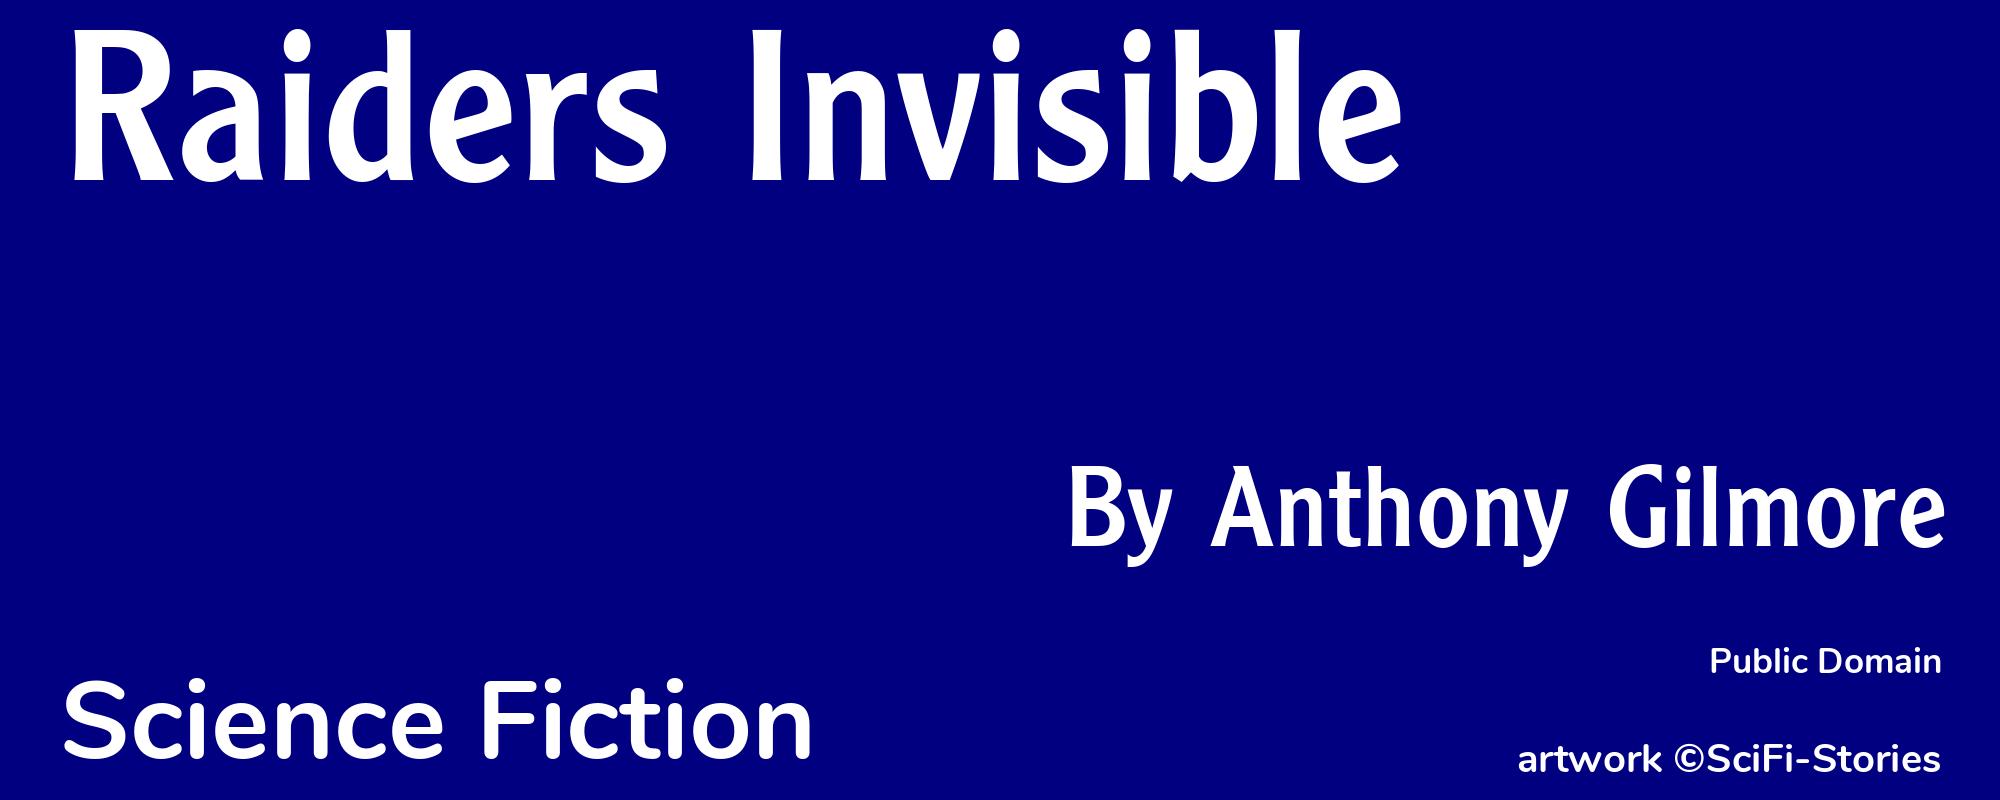 Raiders Invisible - Cover